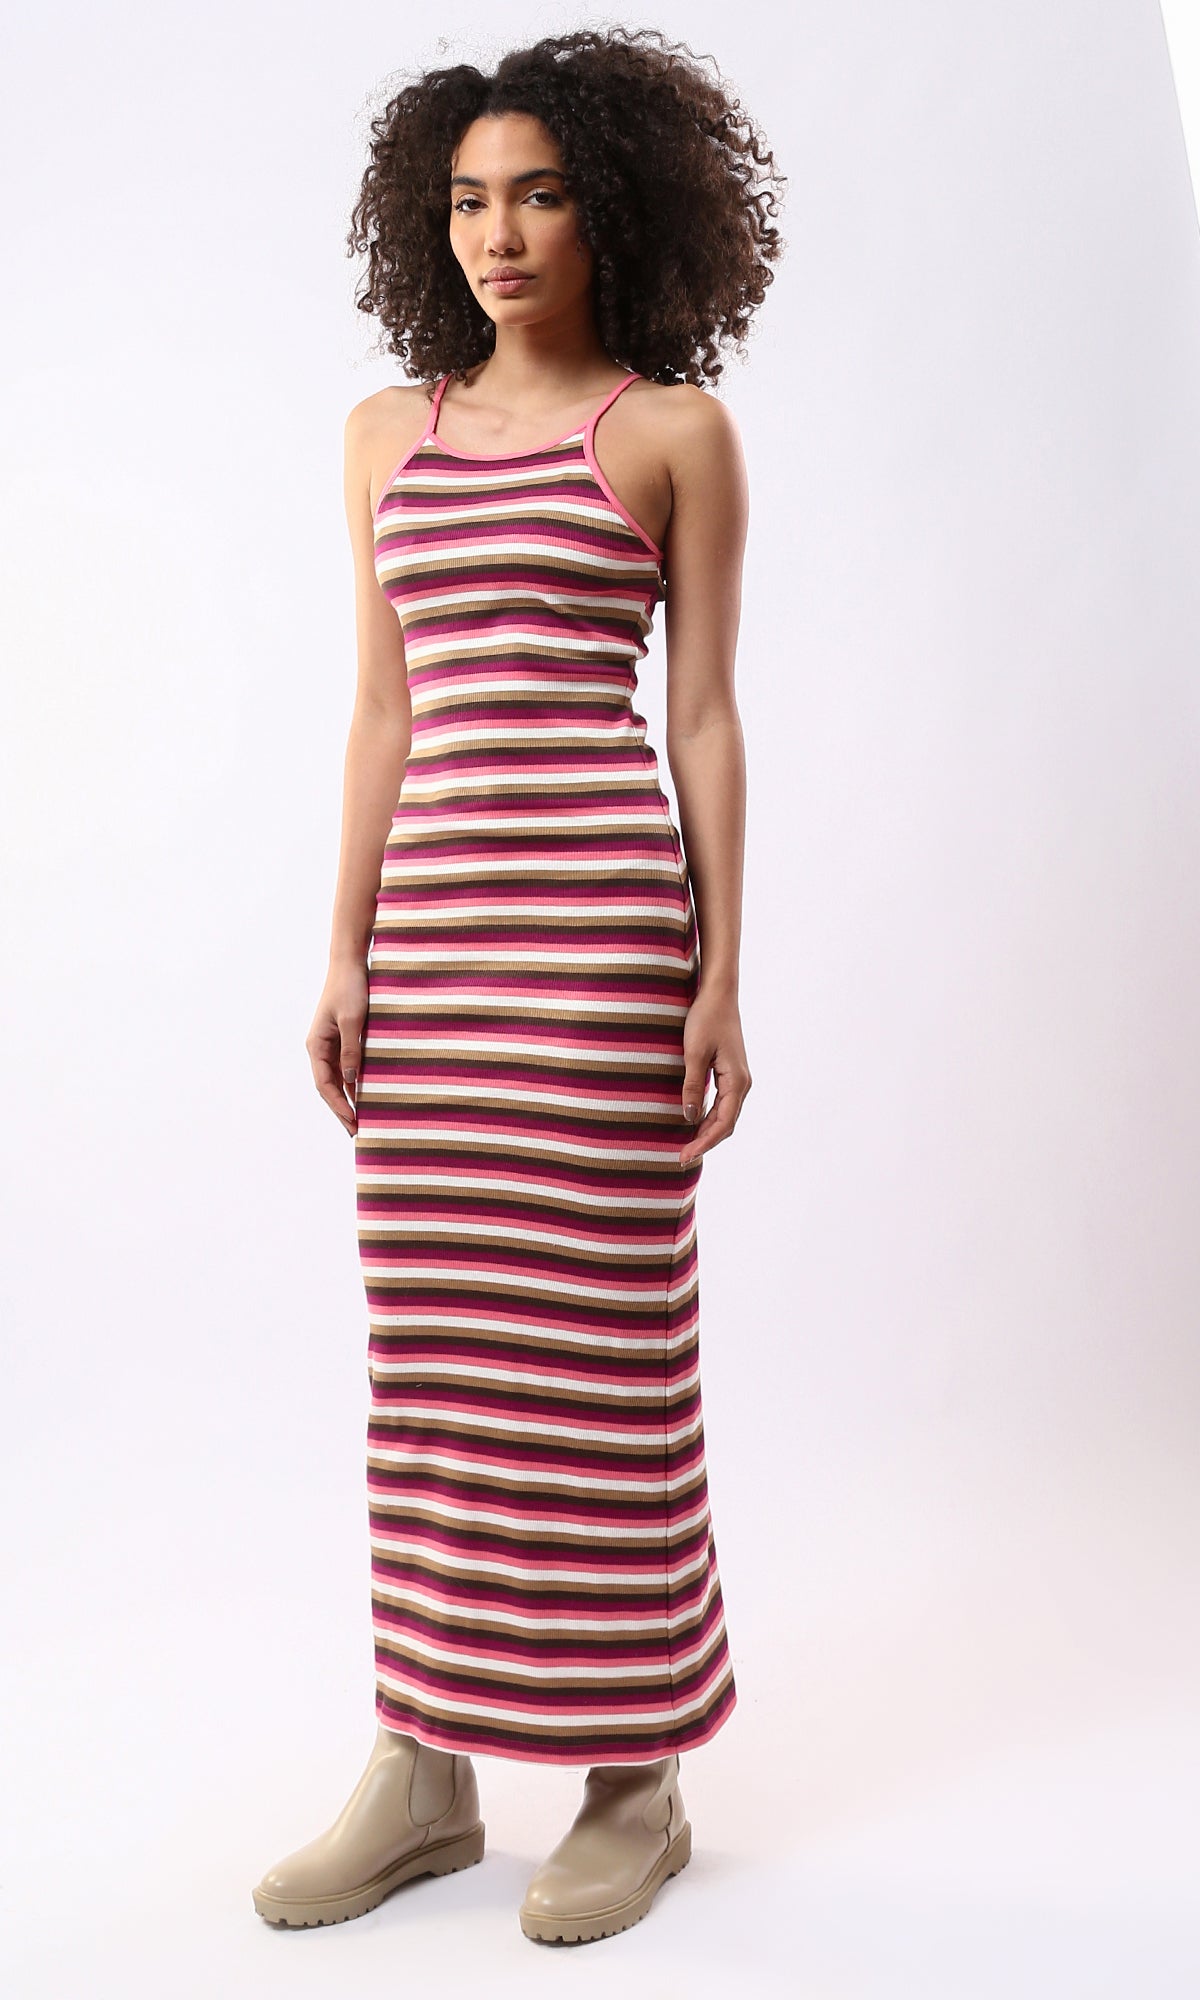 O177913 Multicolour Striped Sleeveless Feminine Maxi Dress